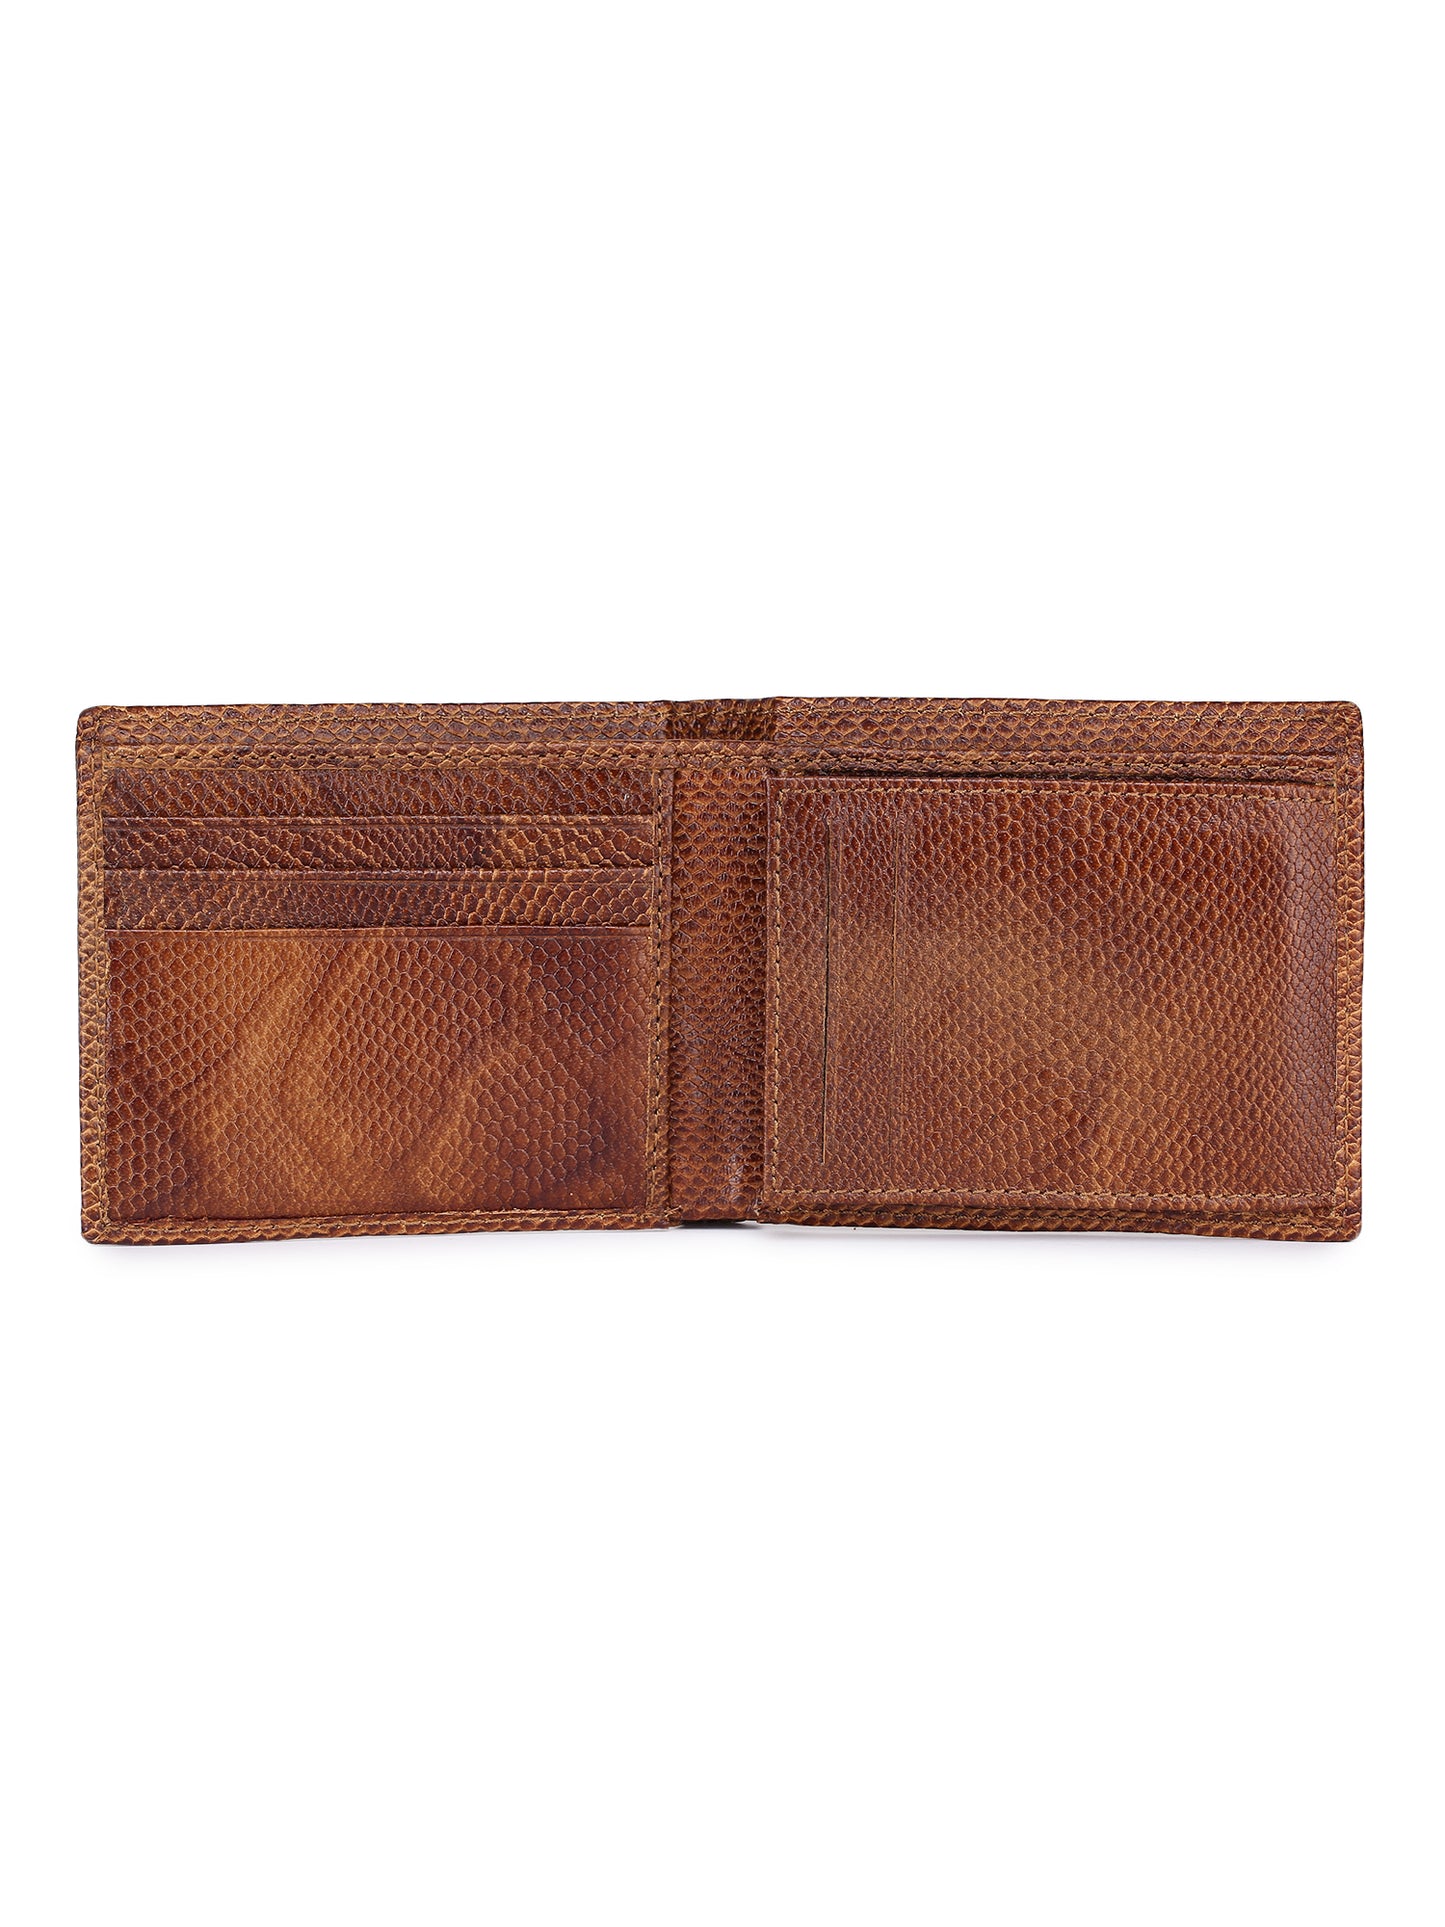 Alvaro Castagnino Men's Tan Color Leather Wallet